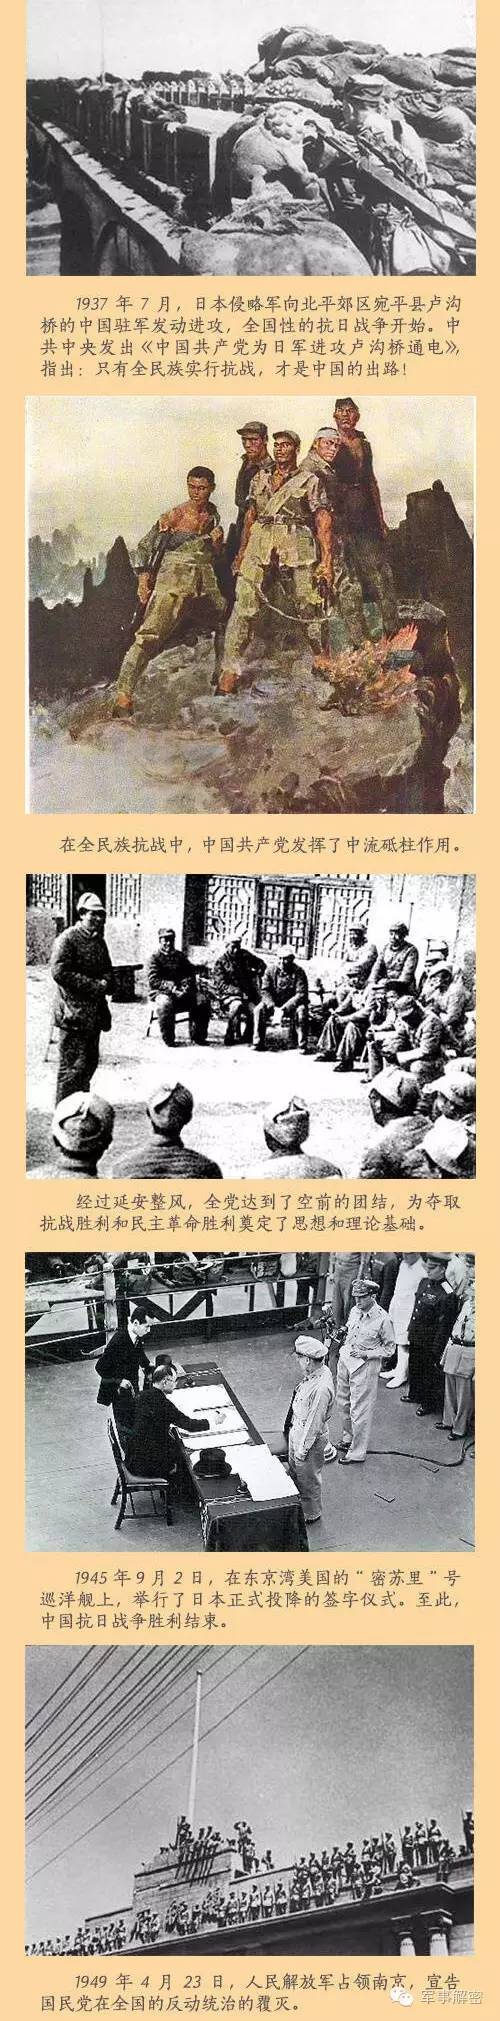 一张图看中国共产党95年历史